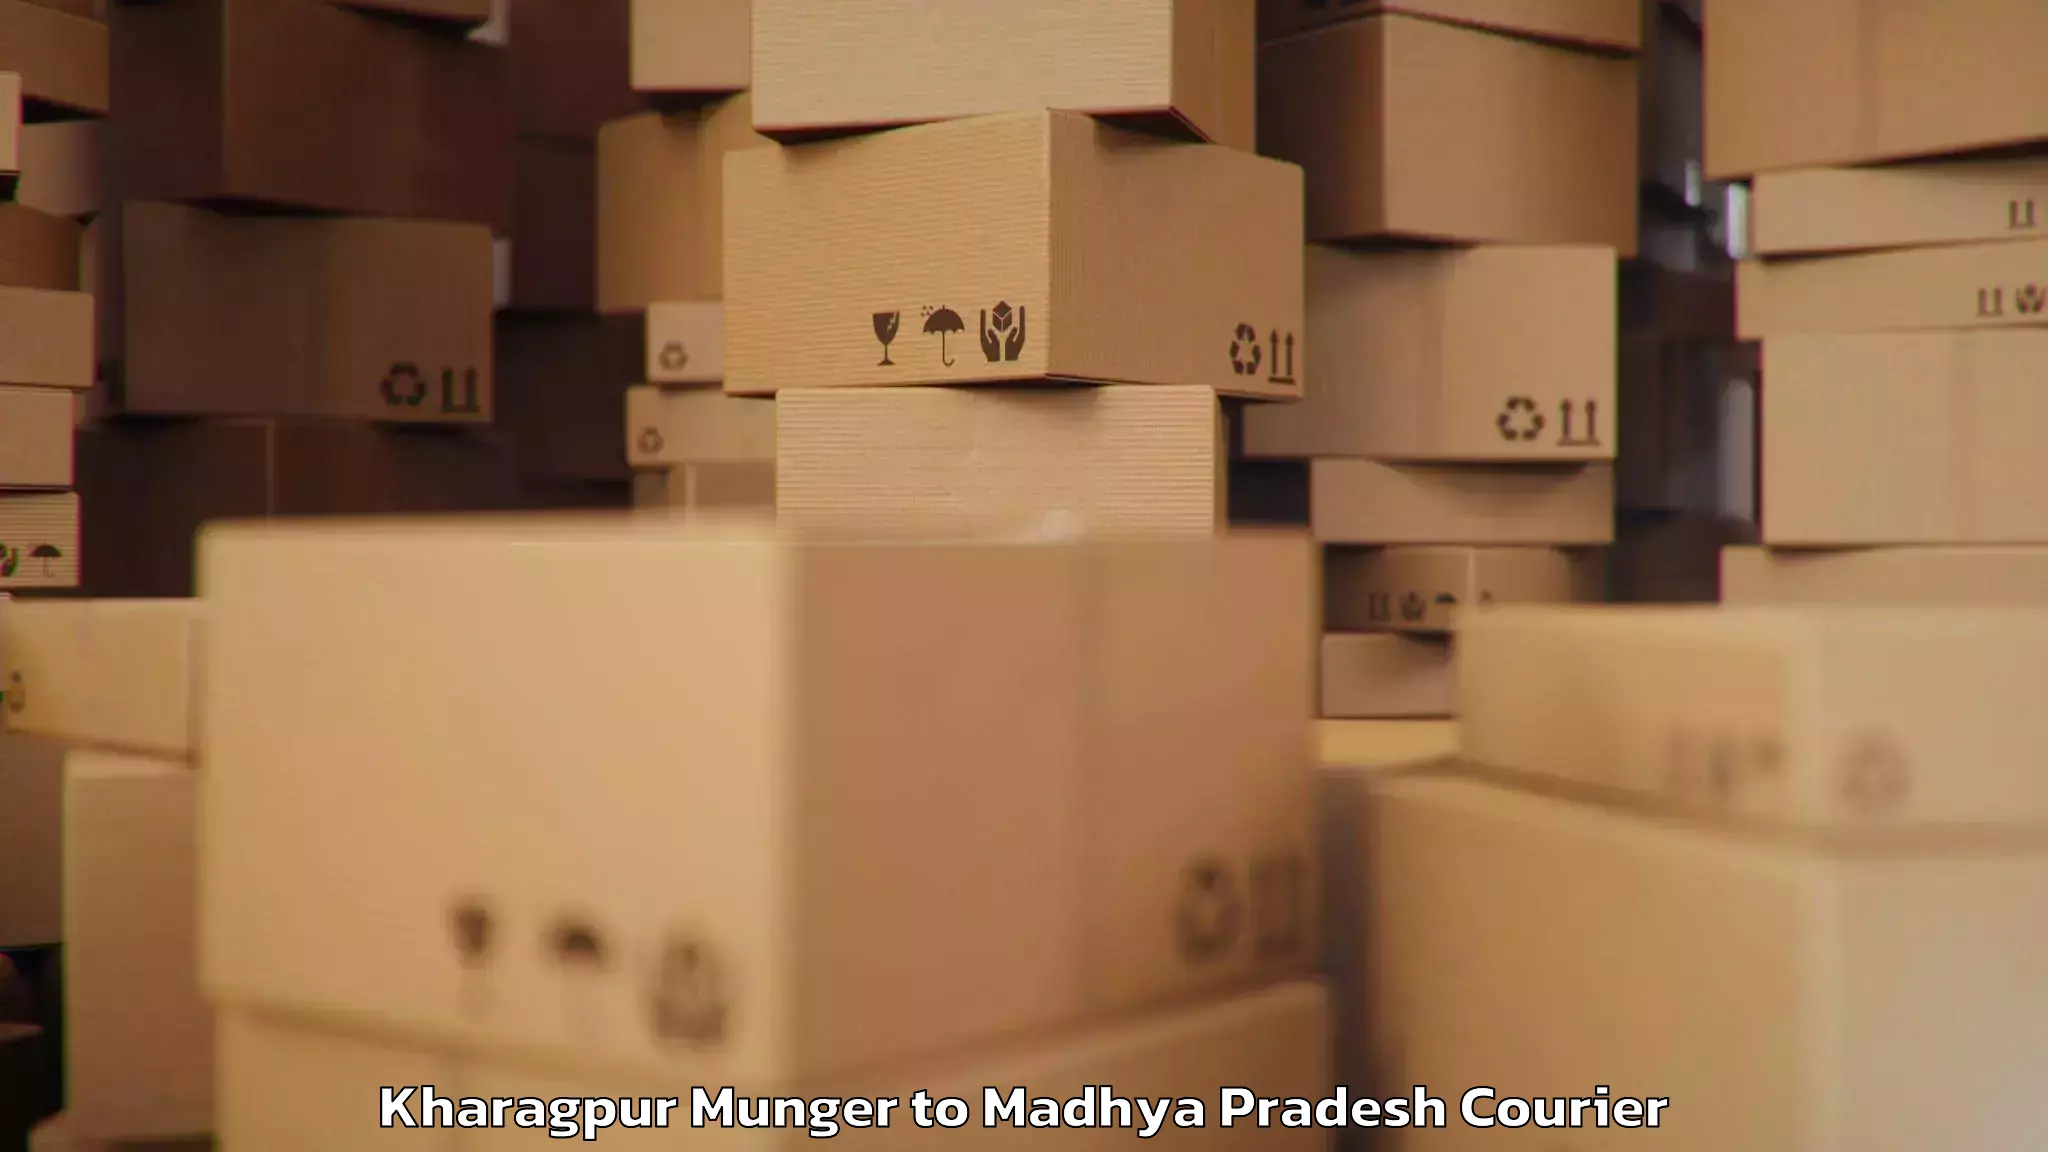 Baggage shipping logistics Kharagpur Munger to Lakhnadon